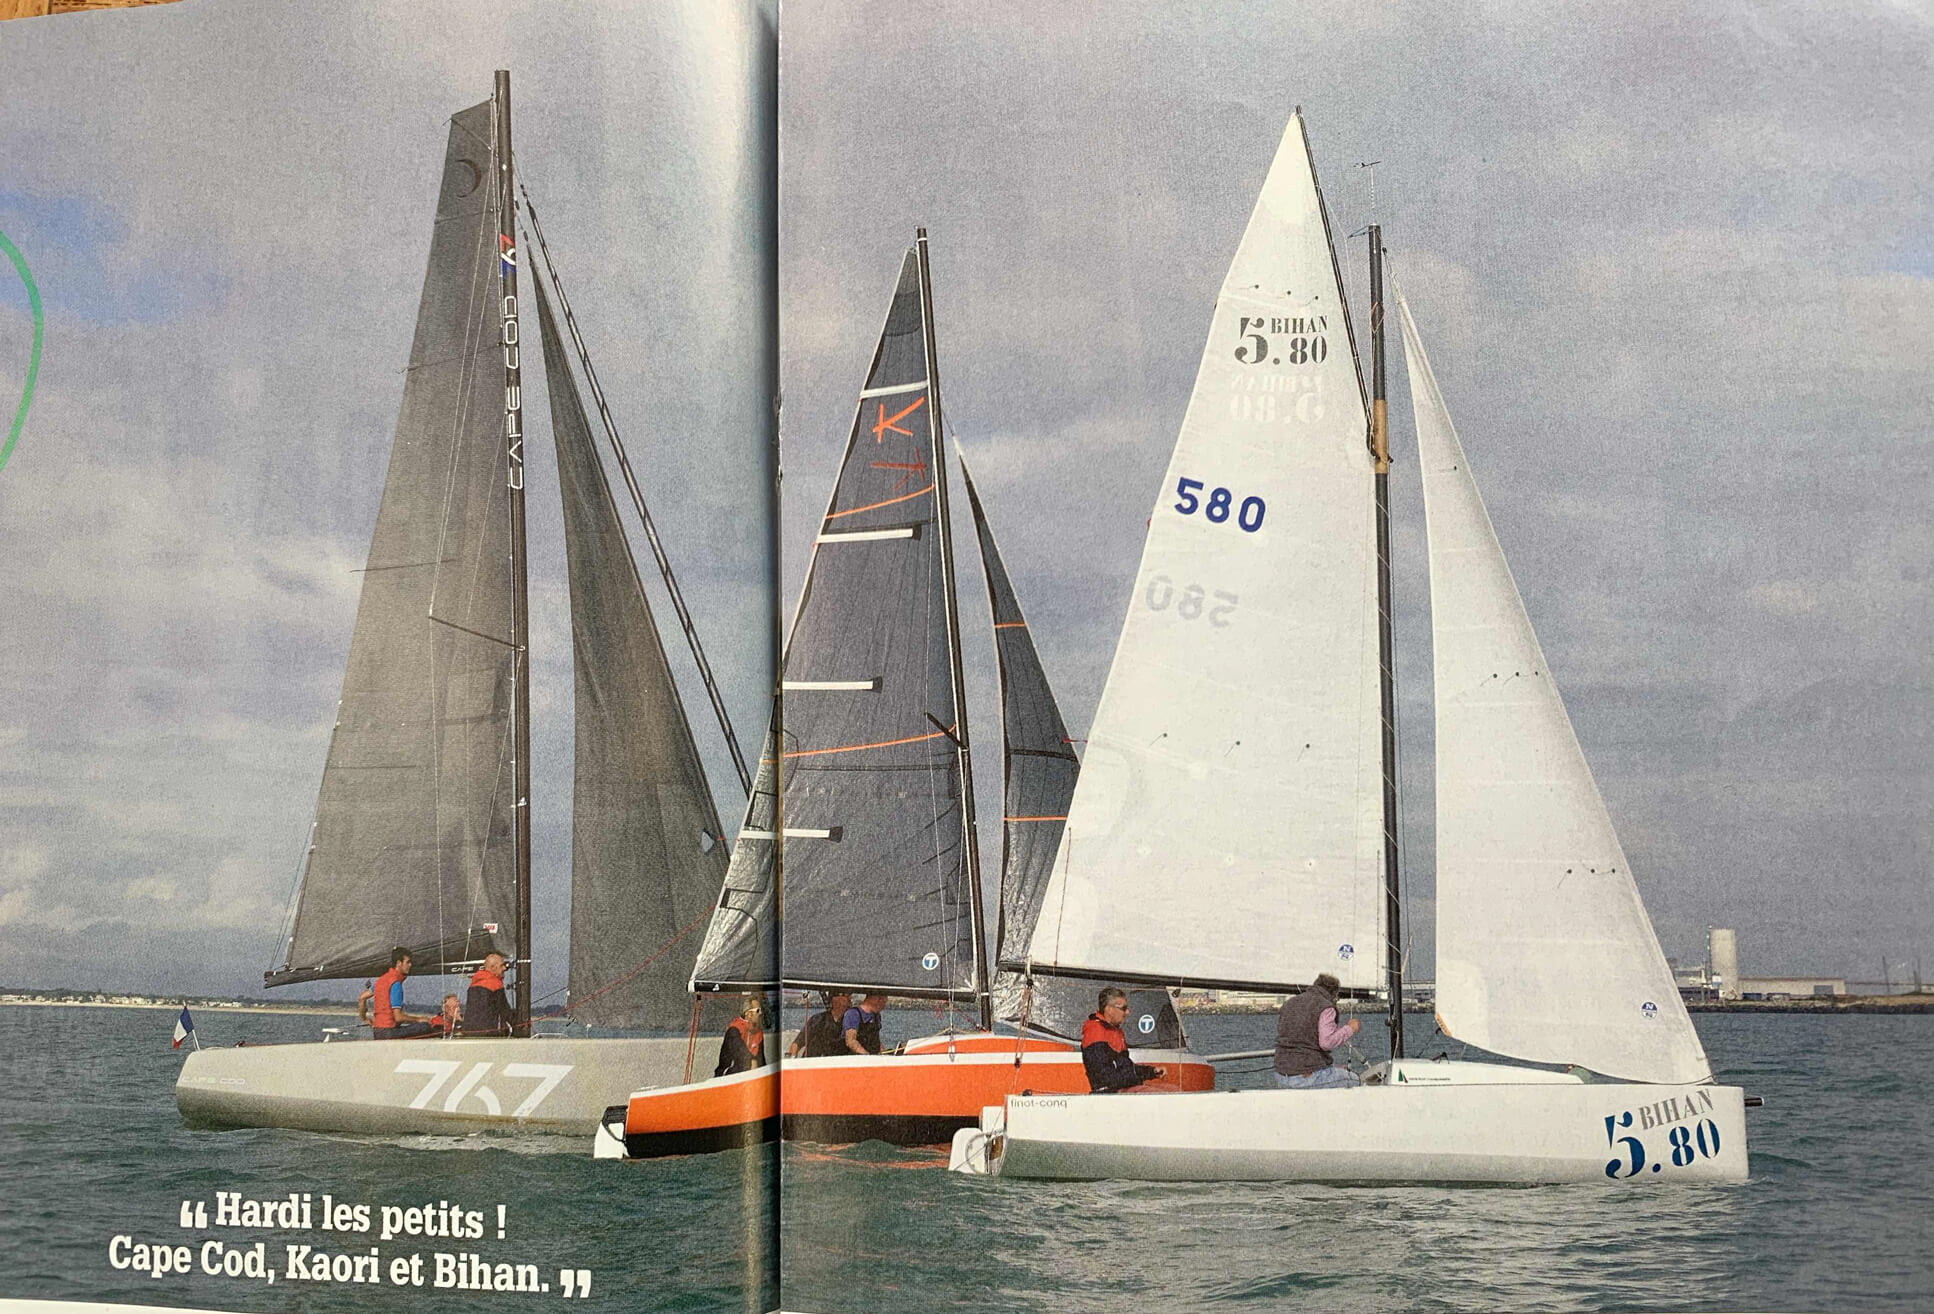 Extrait de l'article de Voile Magazine, sur les voiliers de l'année. Le Cape Cod 767 navigue à côté du Bihan 5.80, Prix Bernard Rubinstein